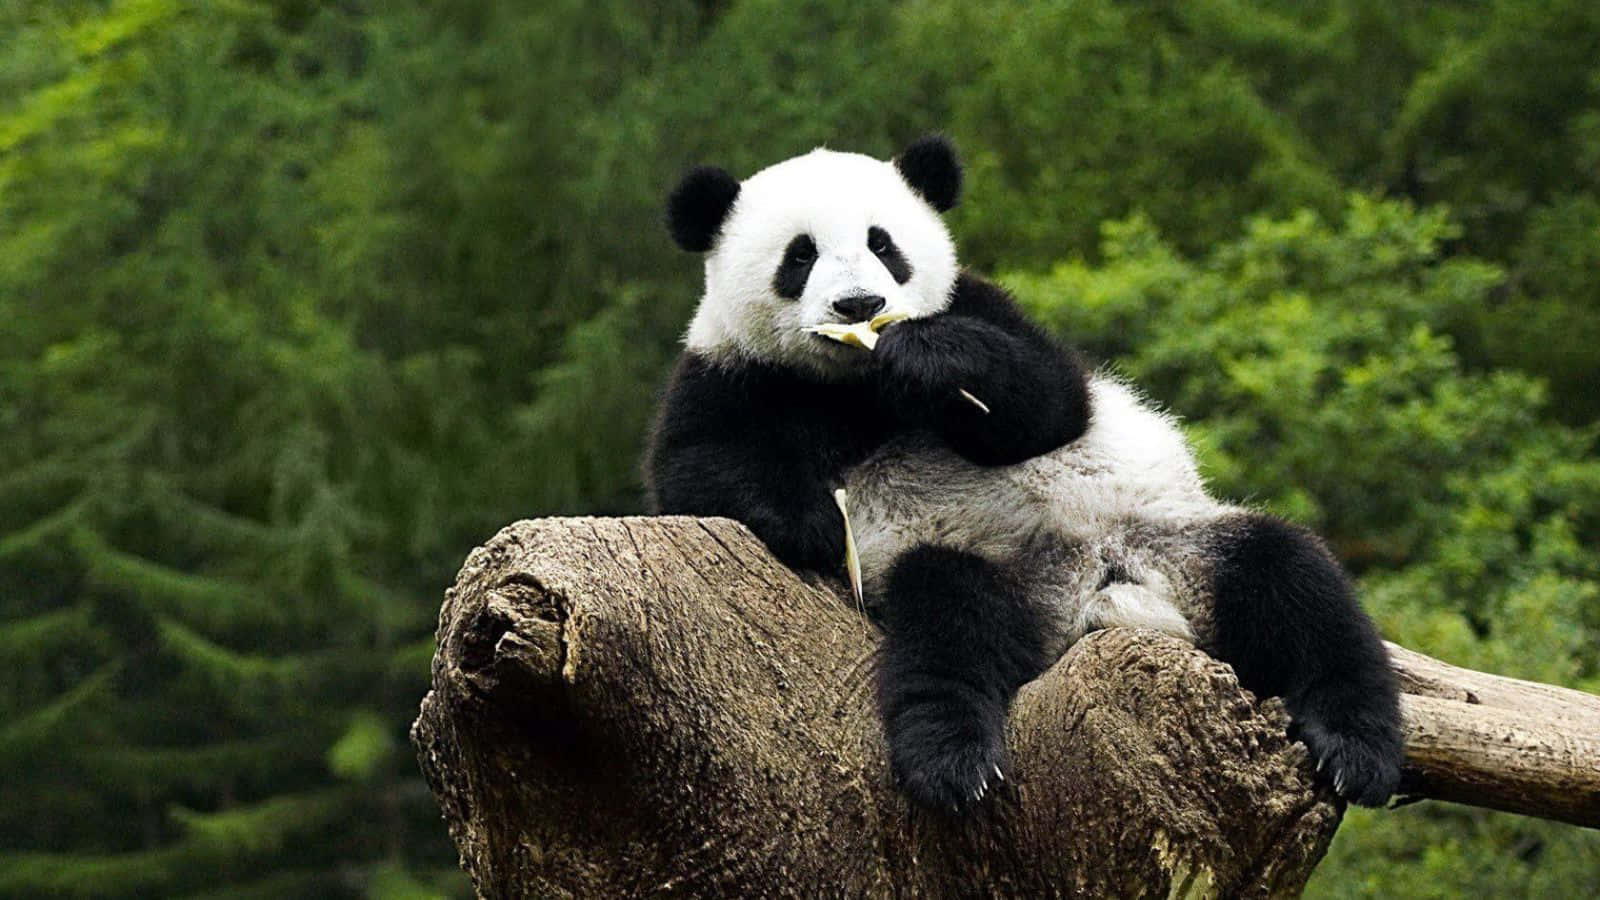 Visãoúnica De Um Panda Comendo Bambu Na Natureza Selvagem.